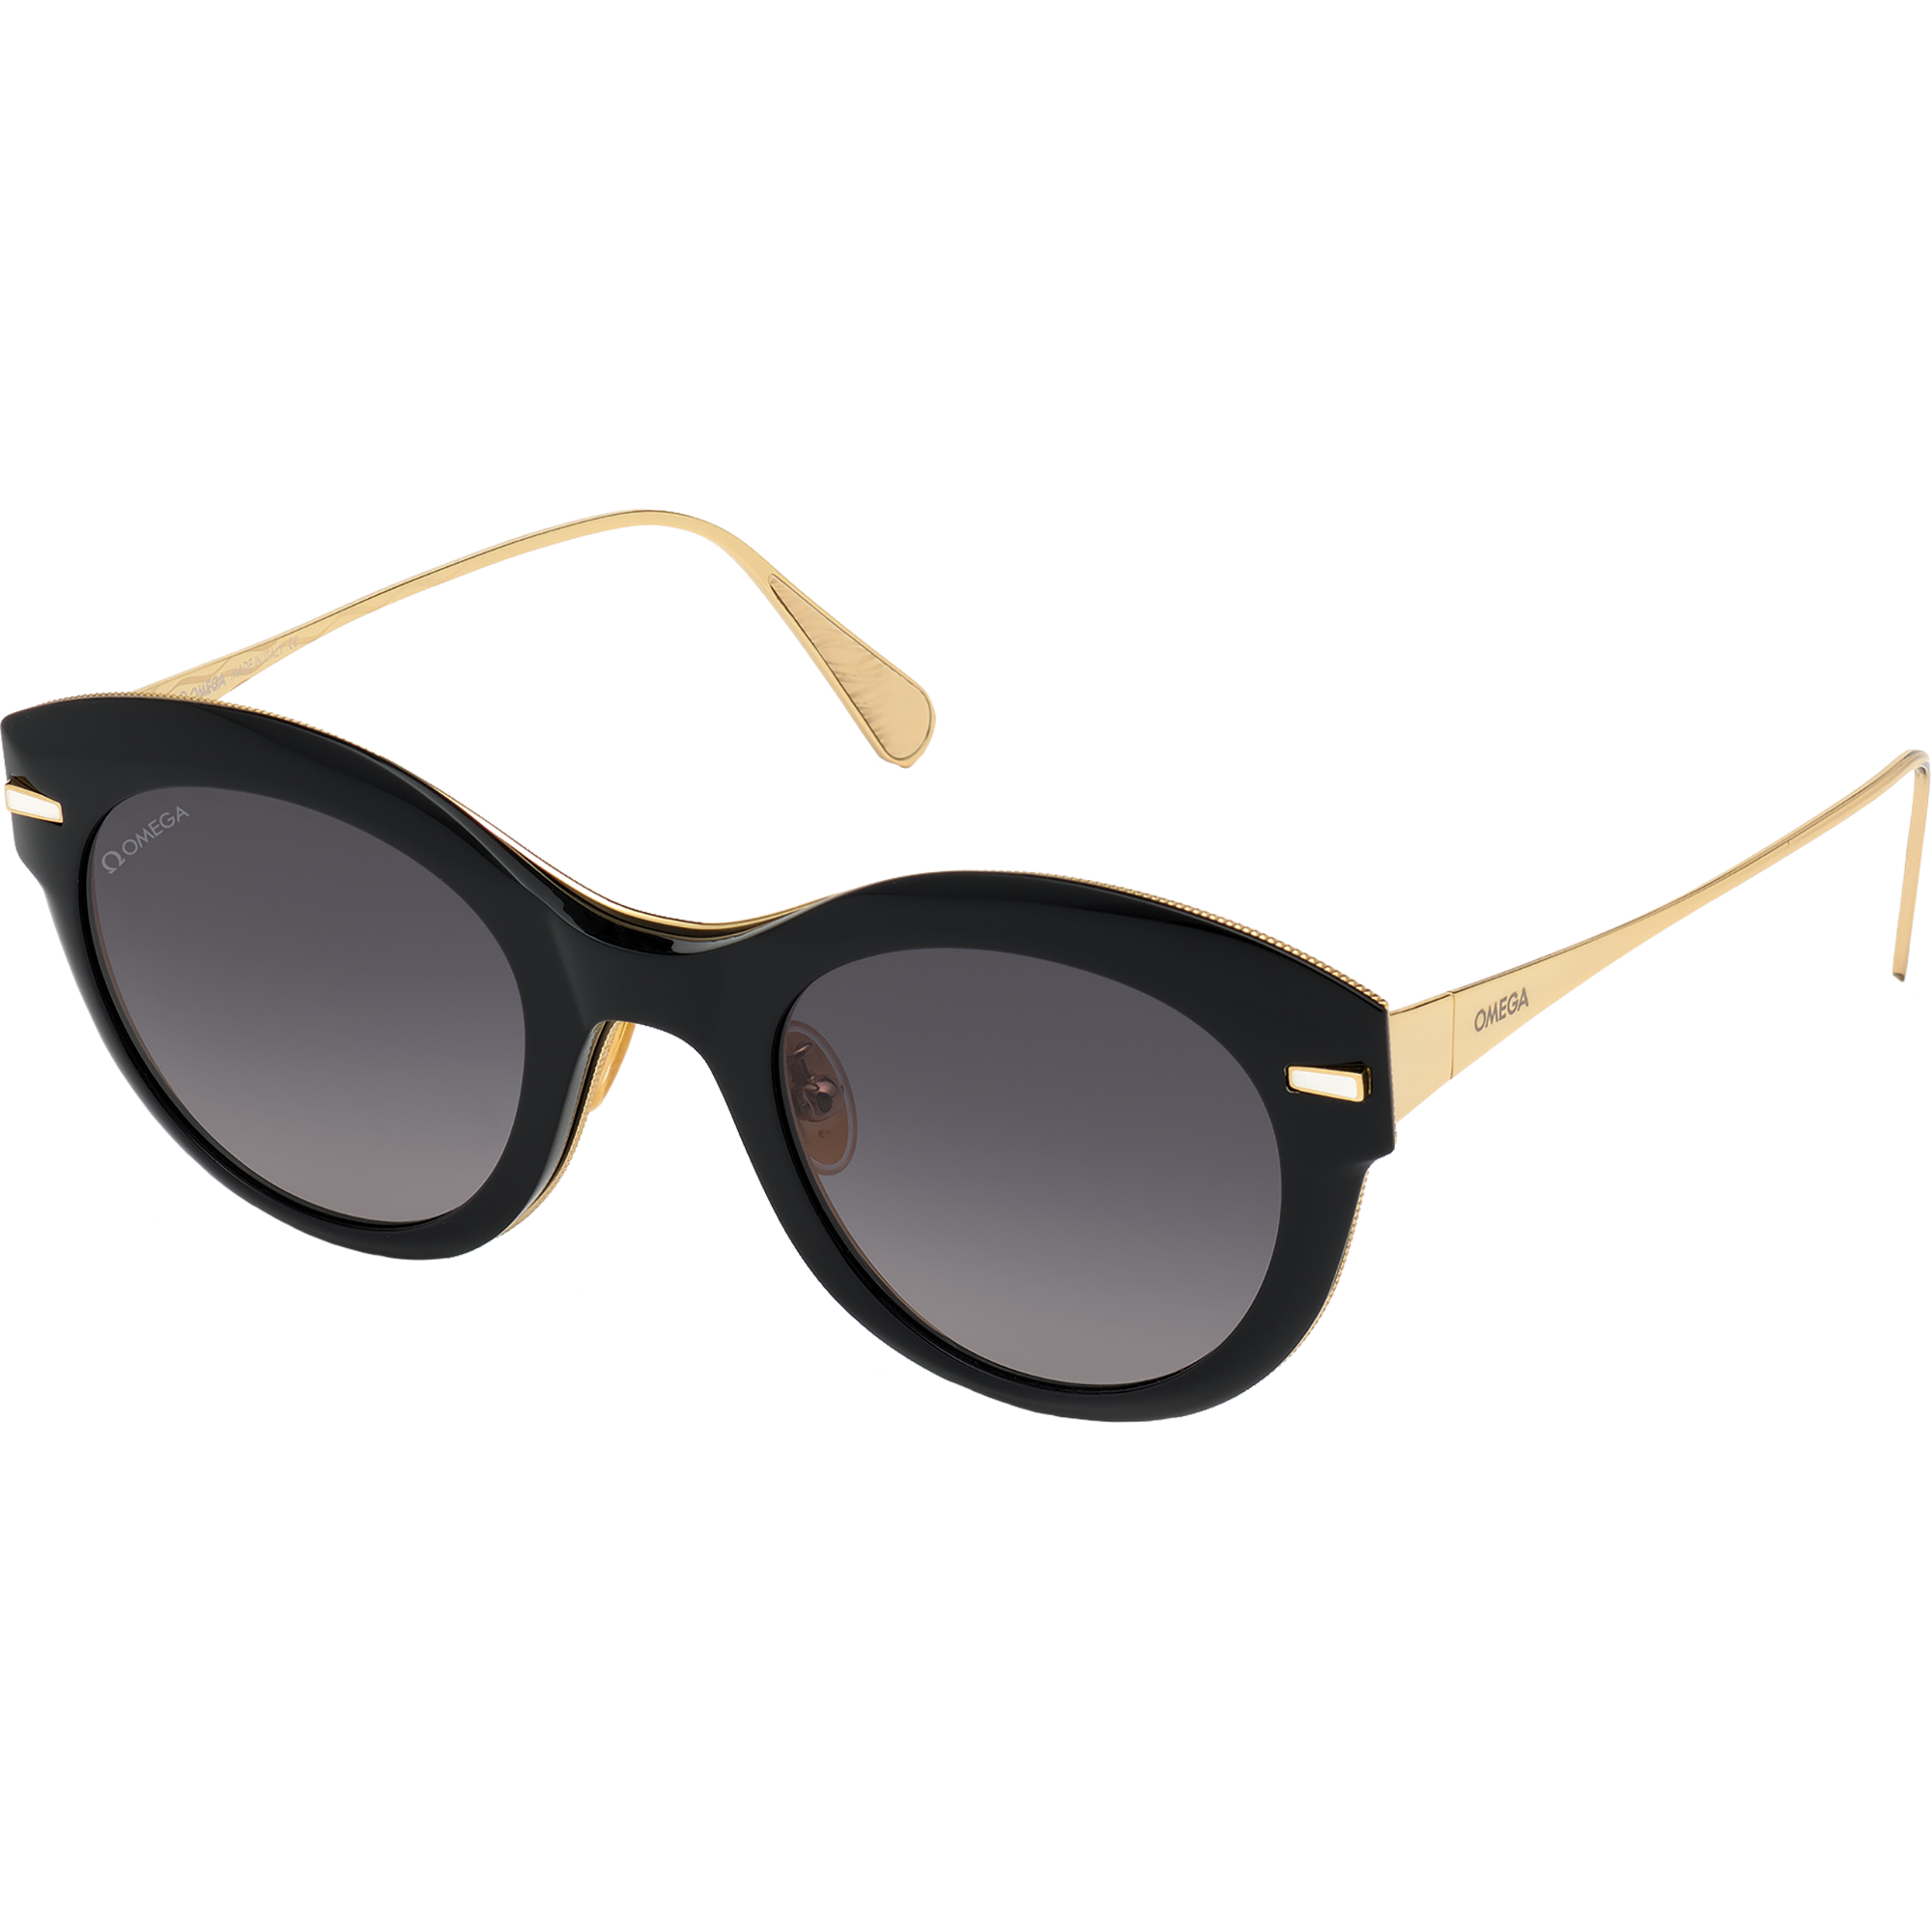 Солнцезащитные очки - Форма "Кошачий глаз", Женские очки - OM0023-H5101A